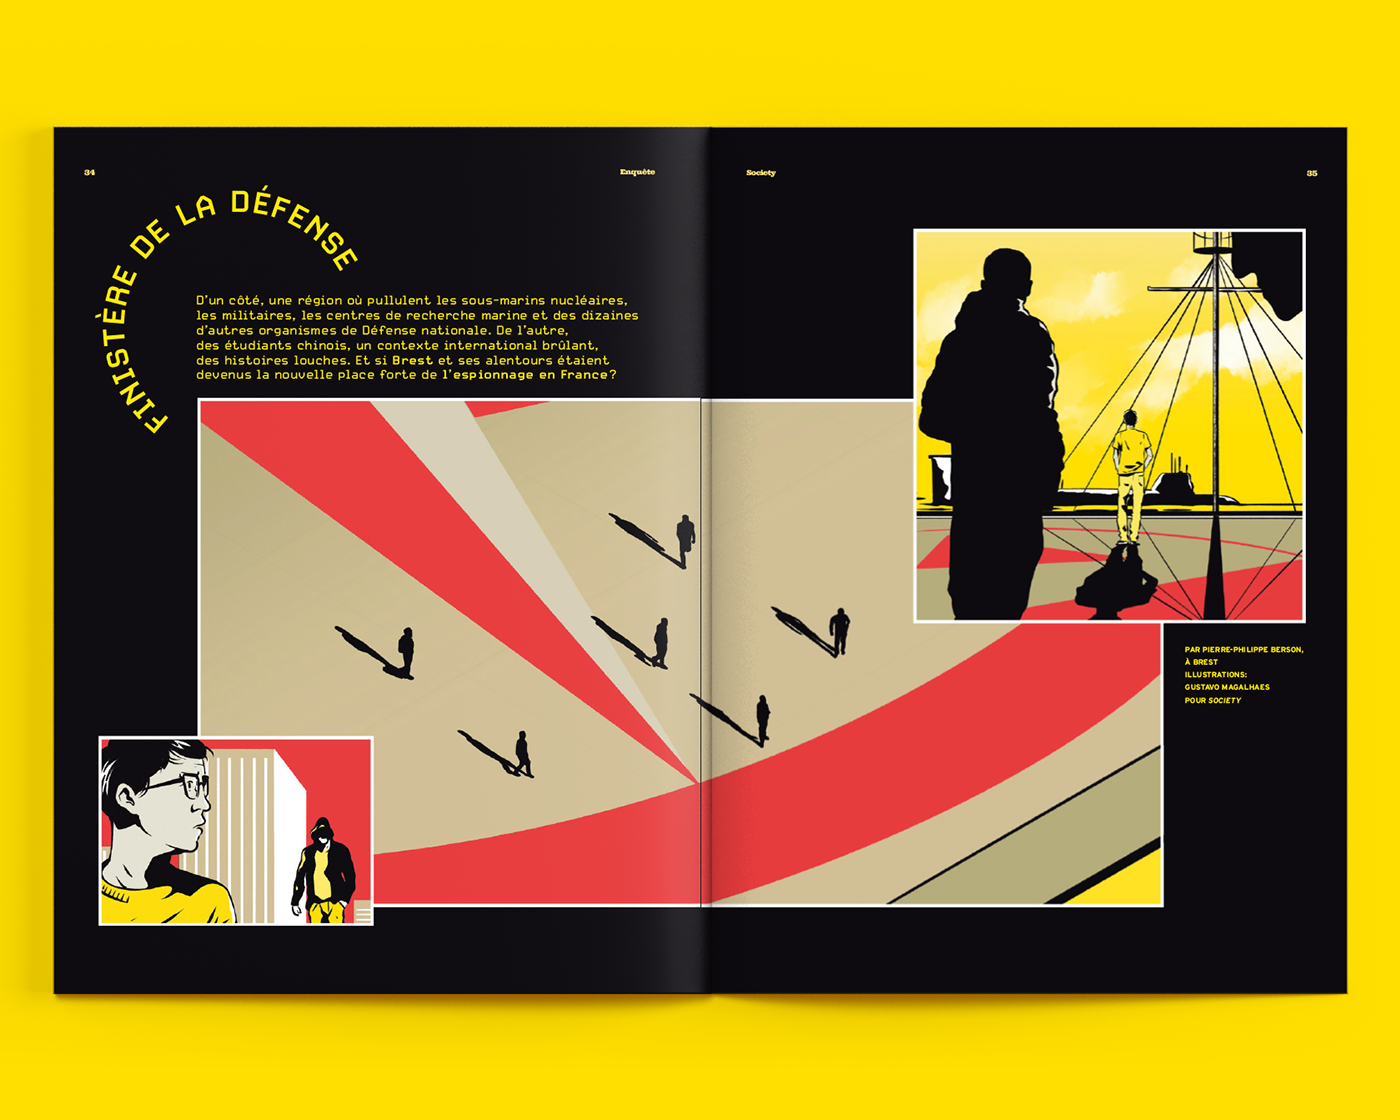 spy magazine Magazine illustration editorial Editorial Illustration